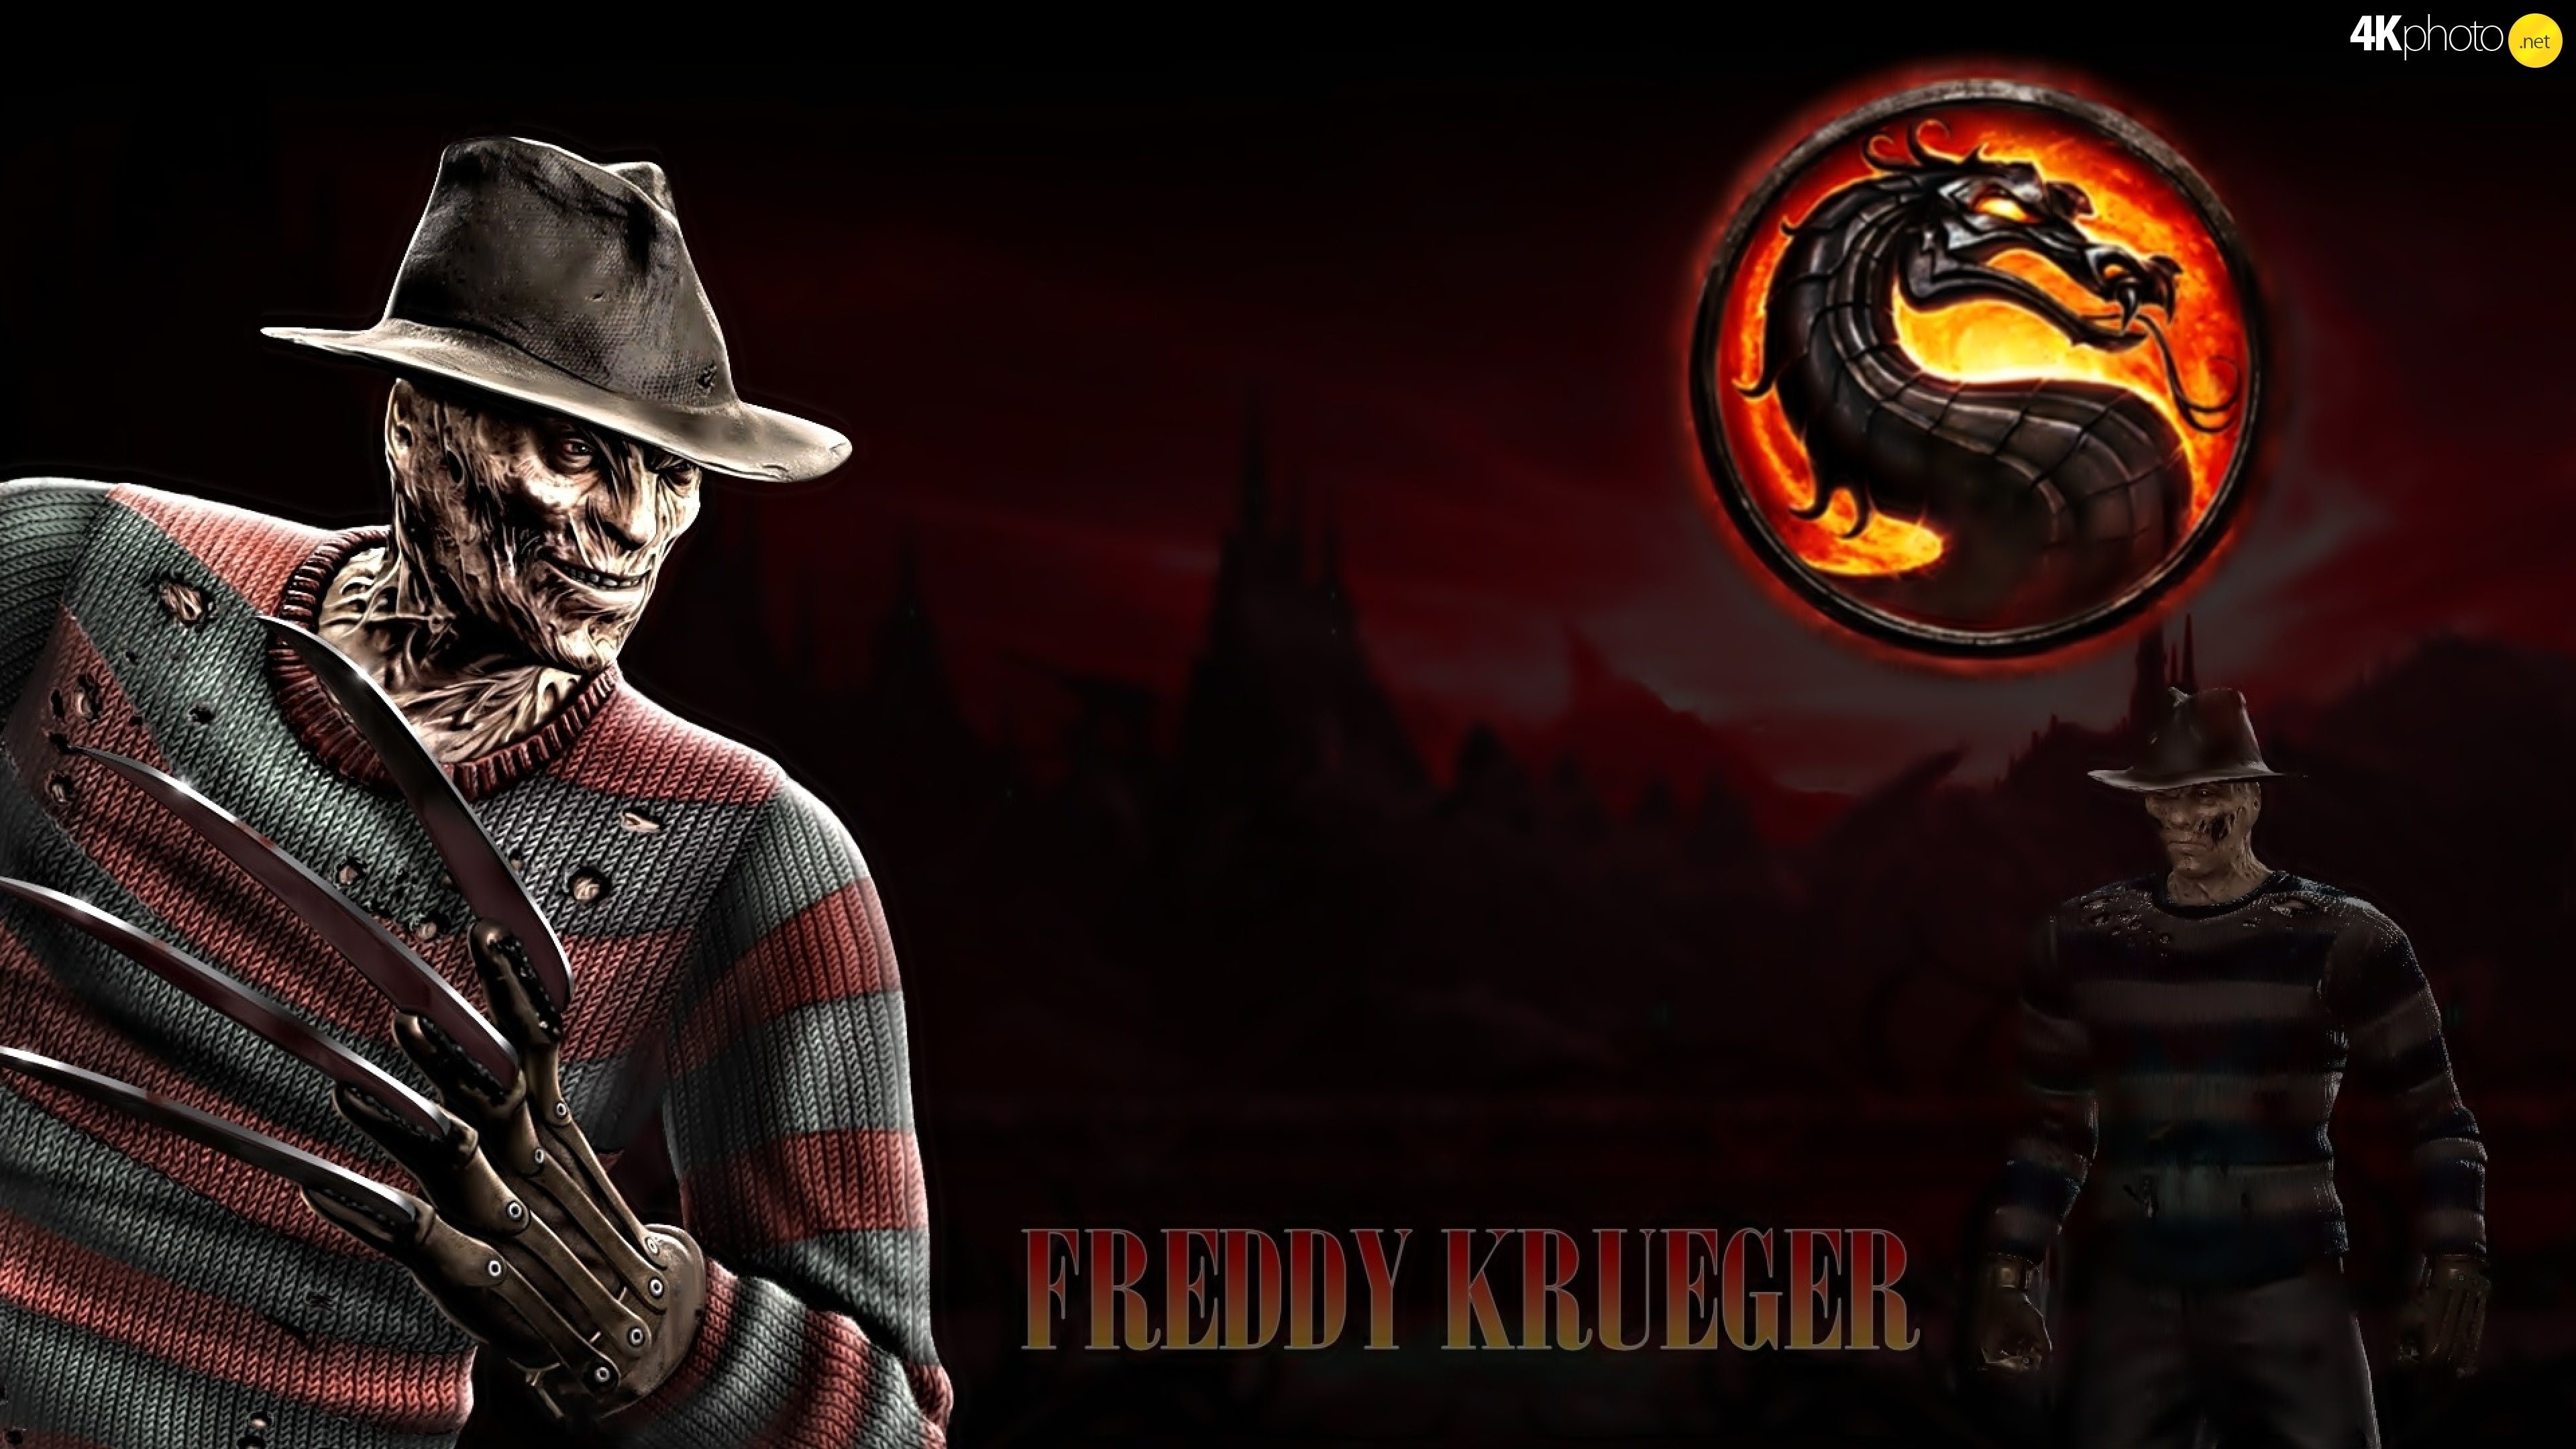 3840x2160 Mortal kombat freddy krueger 1600x1200 wallpapers 1600x1200 - Mortal Kombat Freddy  Krueger 1600x1200 Wallpapers 1600x1200 1600x1200